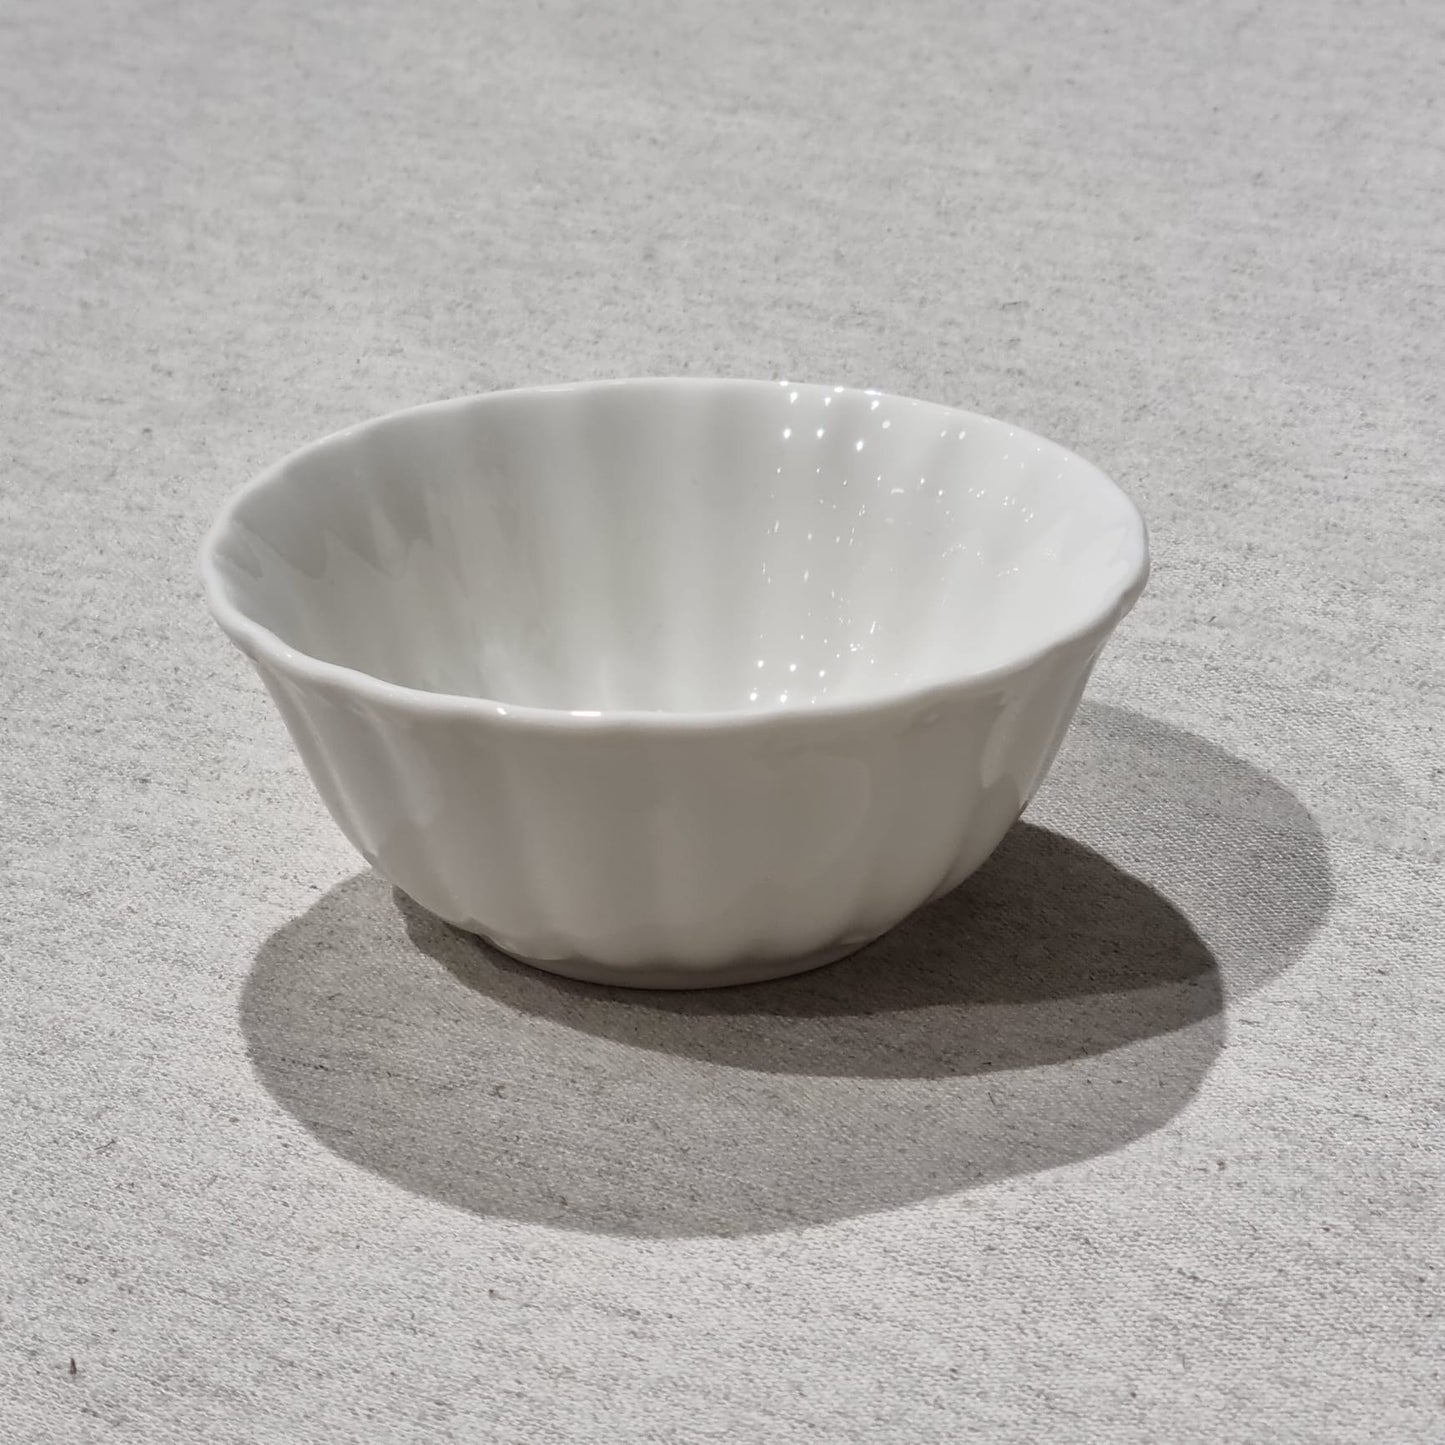 Maza bļodiņa (diam. 12 cm) no Toskānas baltā porcelāna kolekcijas